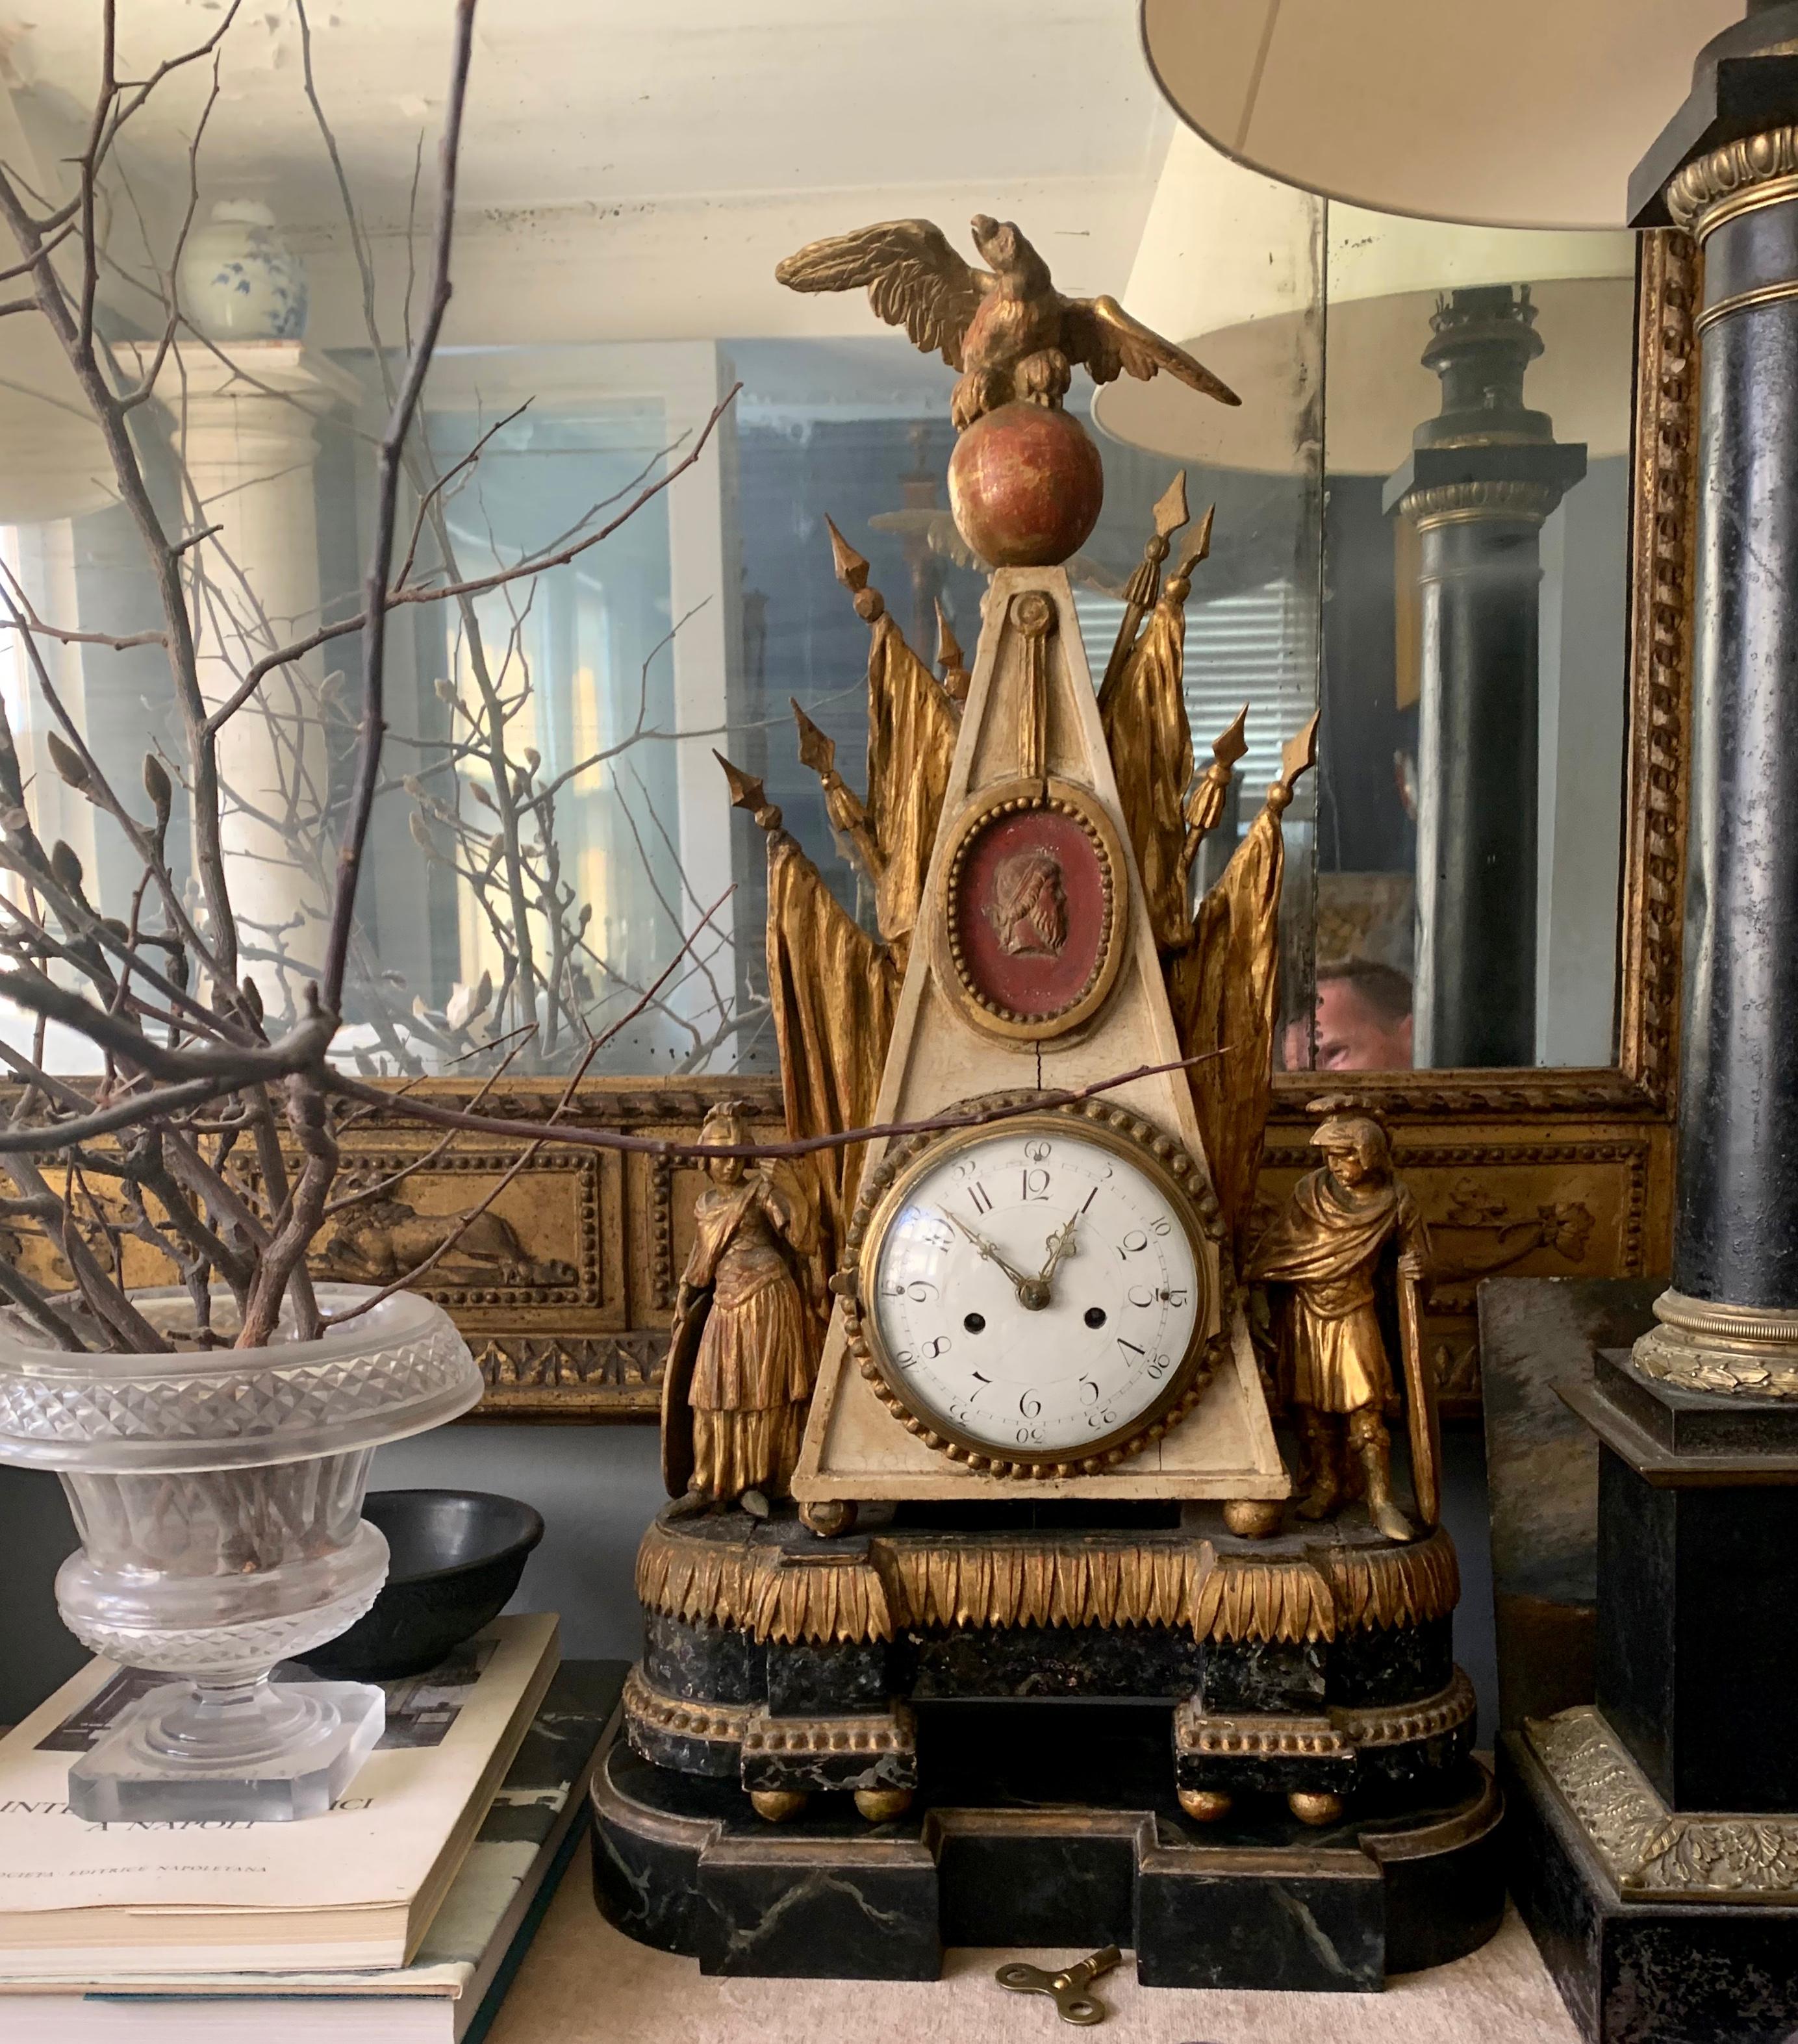 Italienische Uhr im neoklassizistischen Stil, paketvergoldet. Römisch-militärische Reichszeit-Manteluhr in Obeliskenform, gekrönt von einem außergewöhnlichen Adler mit ausgebreiteten Flügeln auf einem roten Reichsapfel, darüber vergoldete Fahnen,